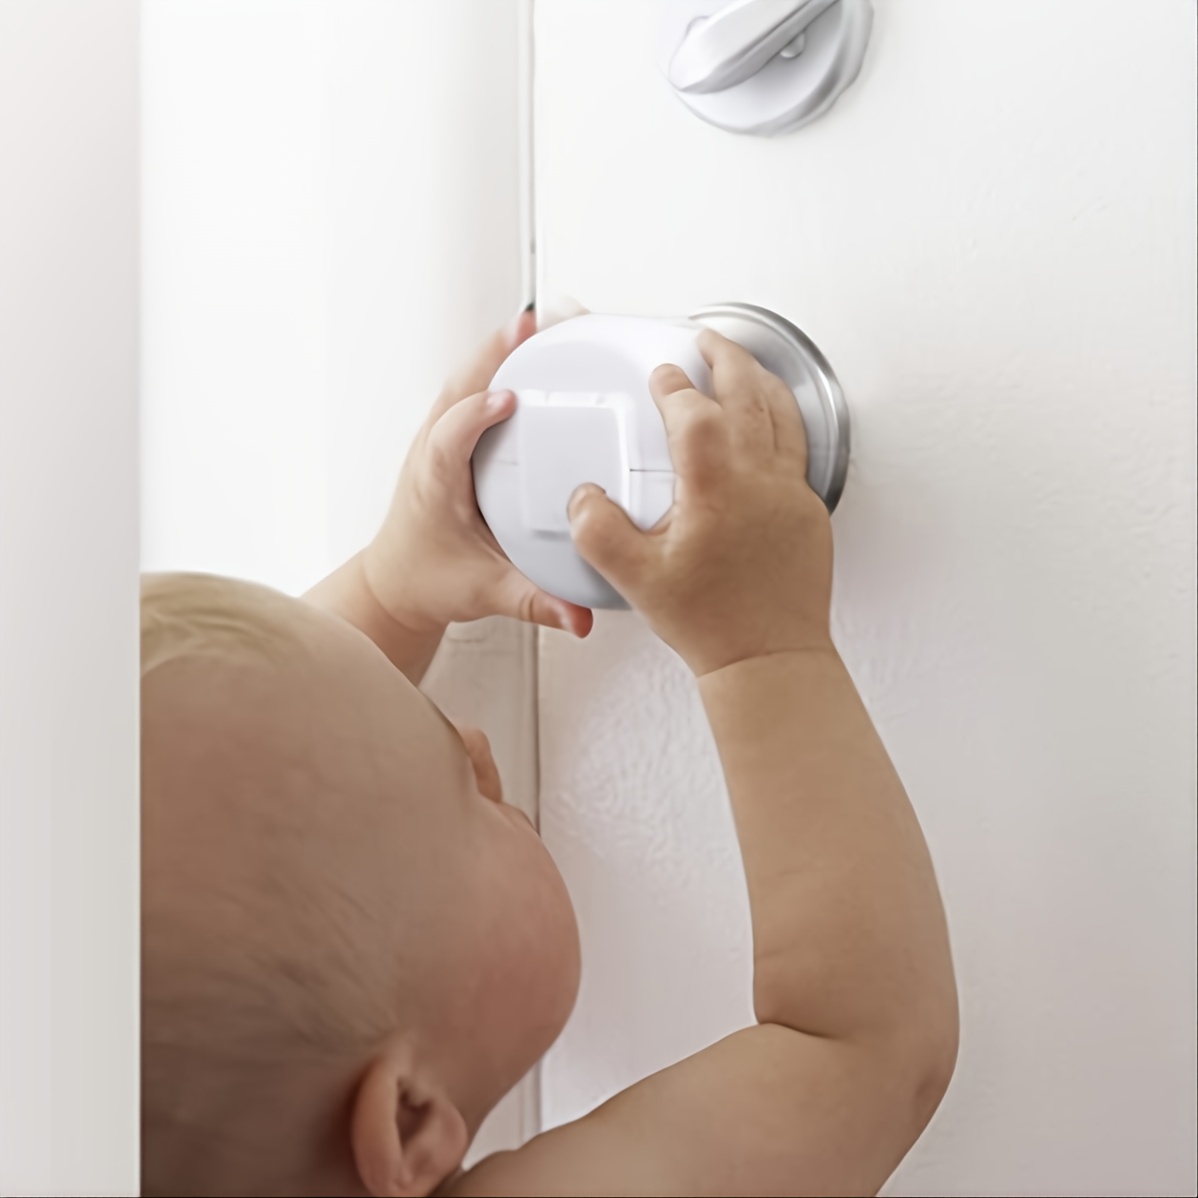 La cerradura de palanca de puerta mejorada a prueba de niños (paquete de 3)  evita que los niños pequeños abran puertas. Fácil operación con una mano